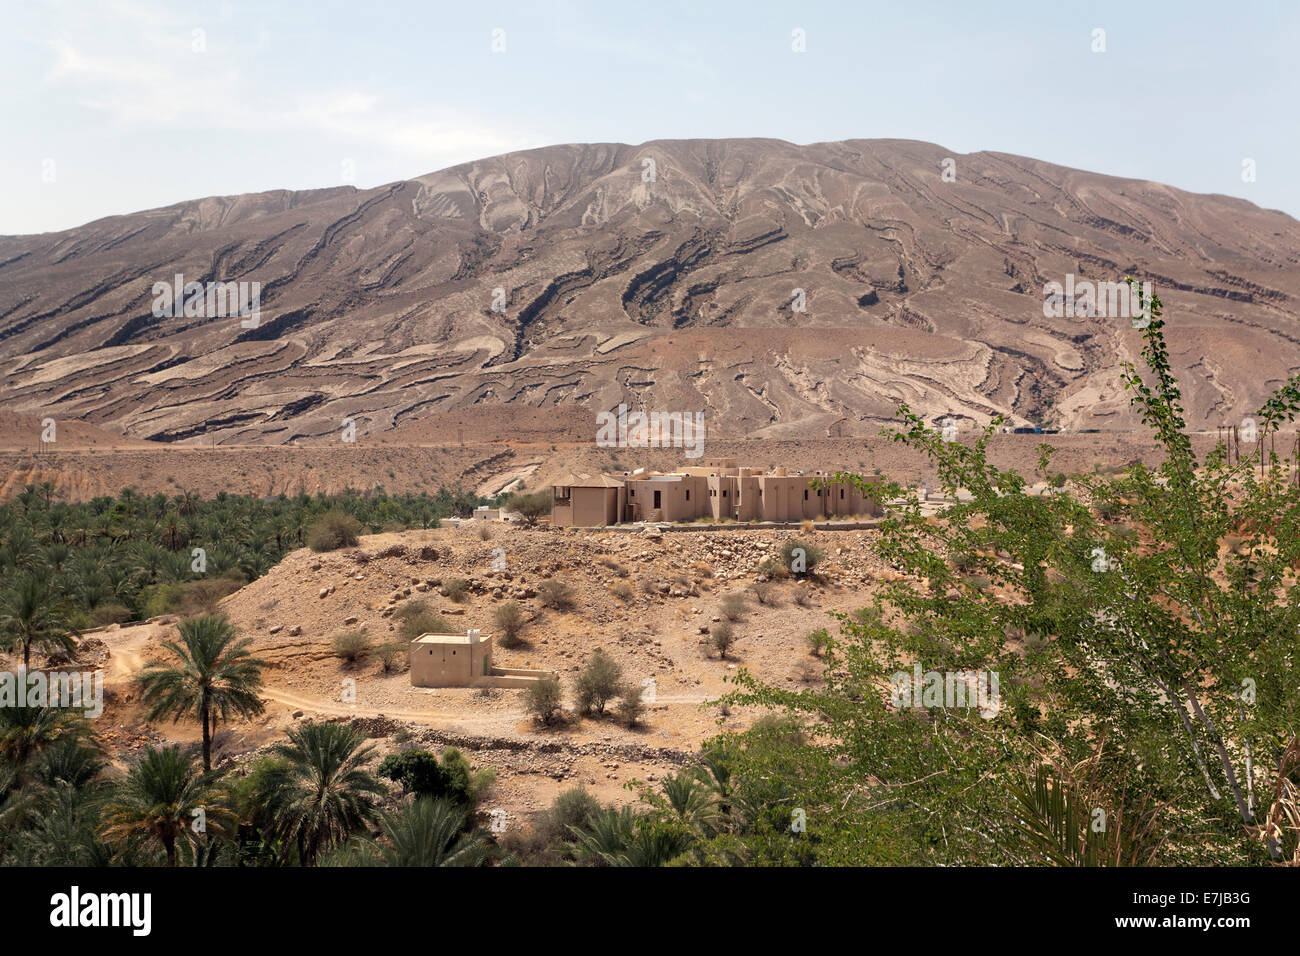 Hill con tagli profondi da erosione, liquidazione, palme da dattero, Sur, Ash Sharqiyah provincia, il sultanato di Oman, Penisola arabica Foto Stock